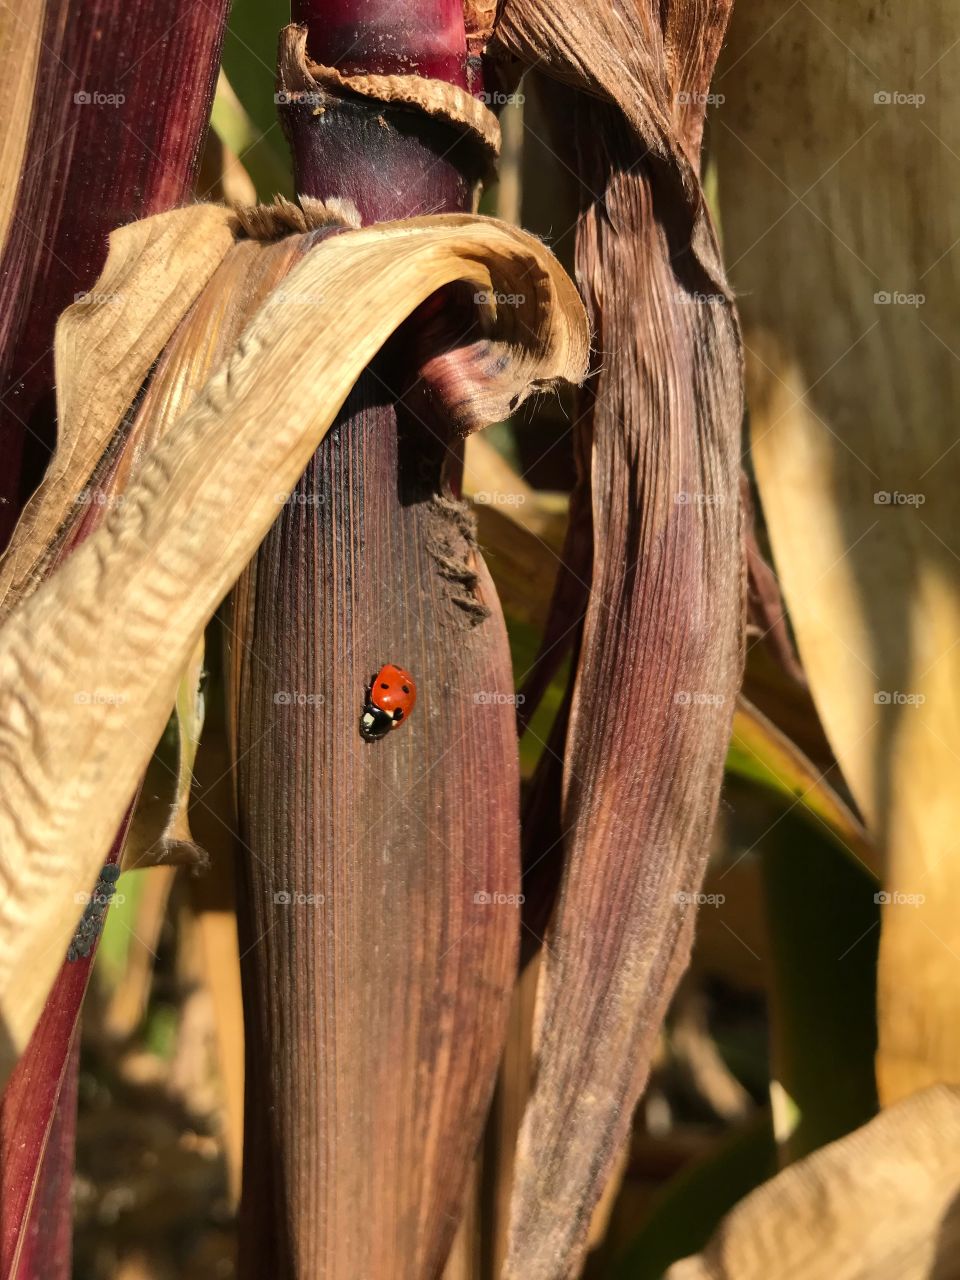 Lady Bug resting on a Corn Stalk